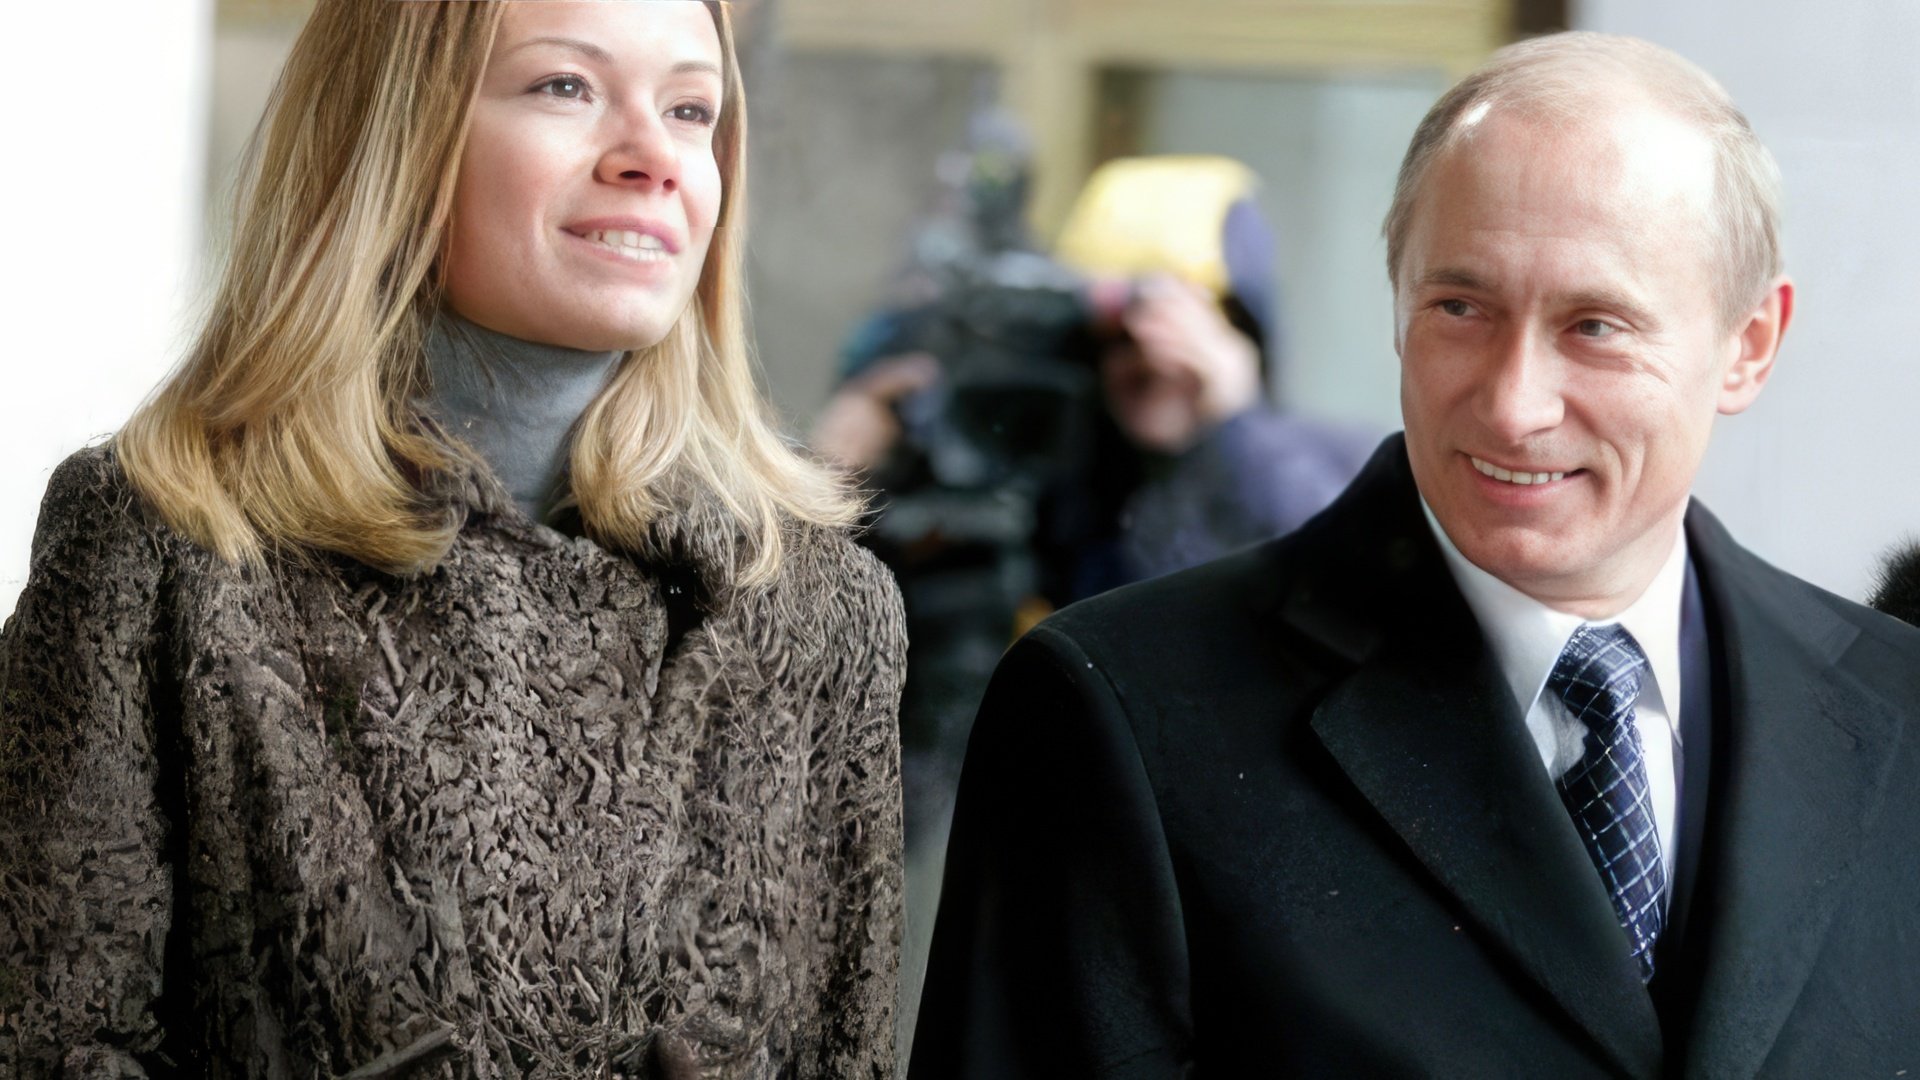 Maria, the eldest daughter of Vladimir Putin